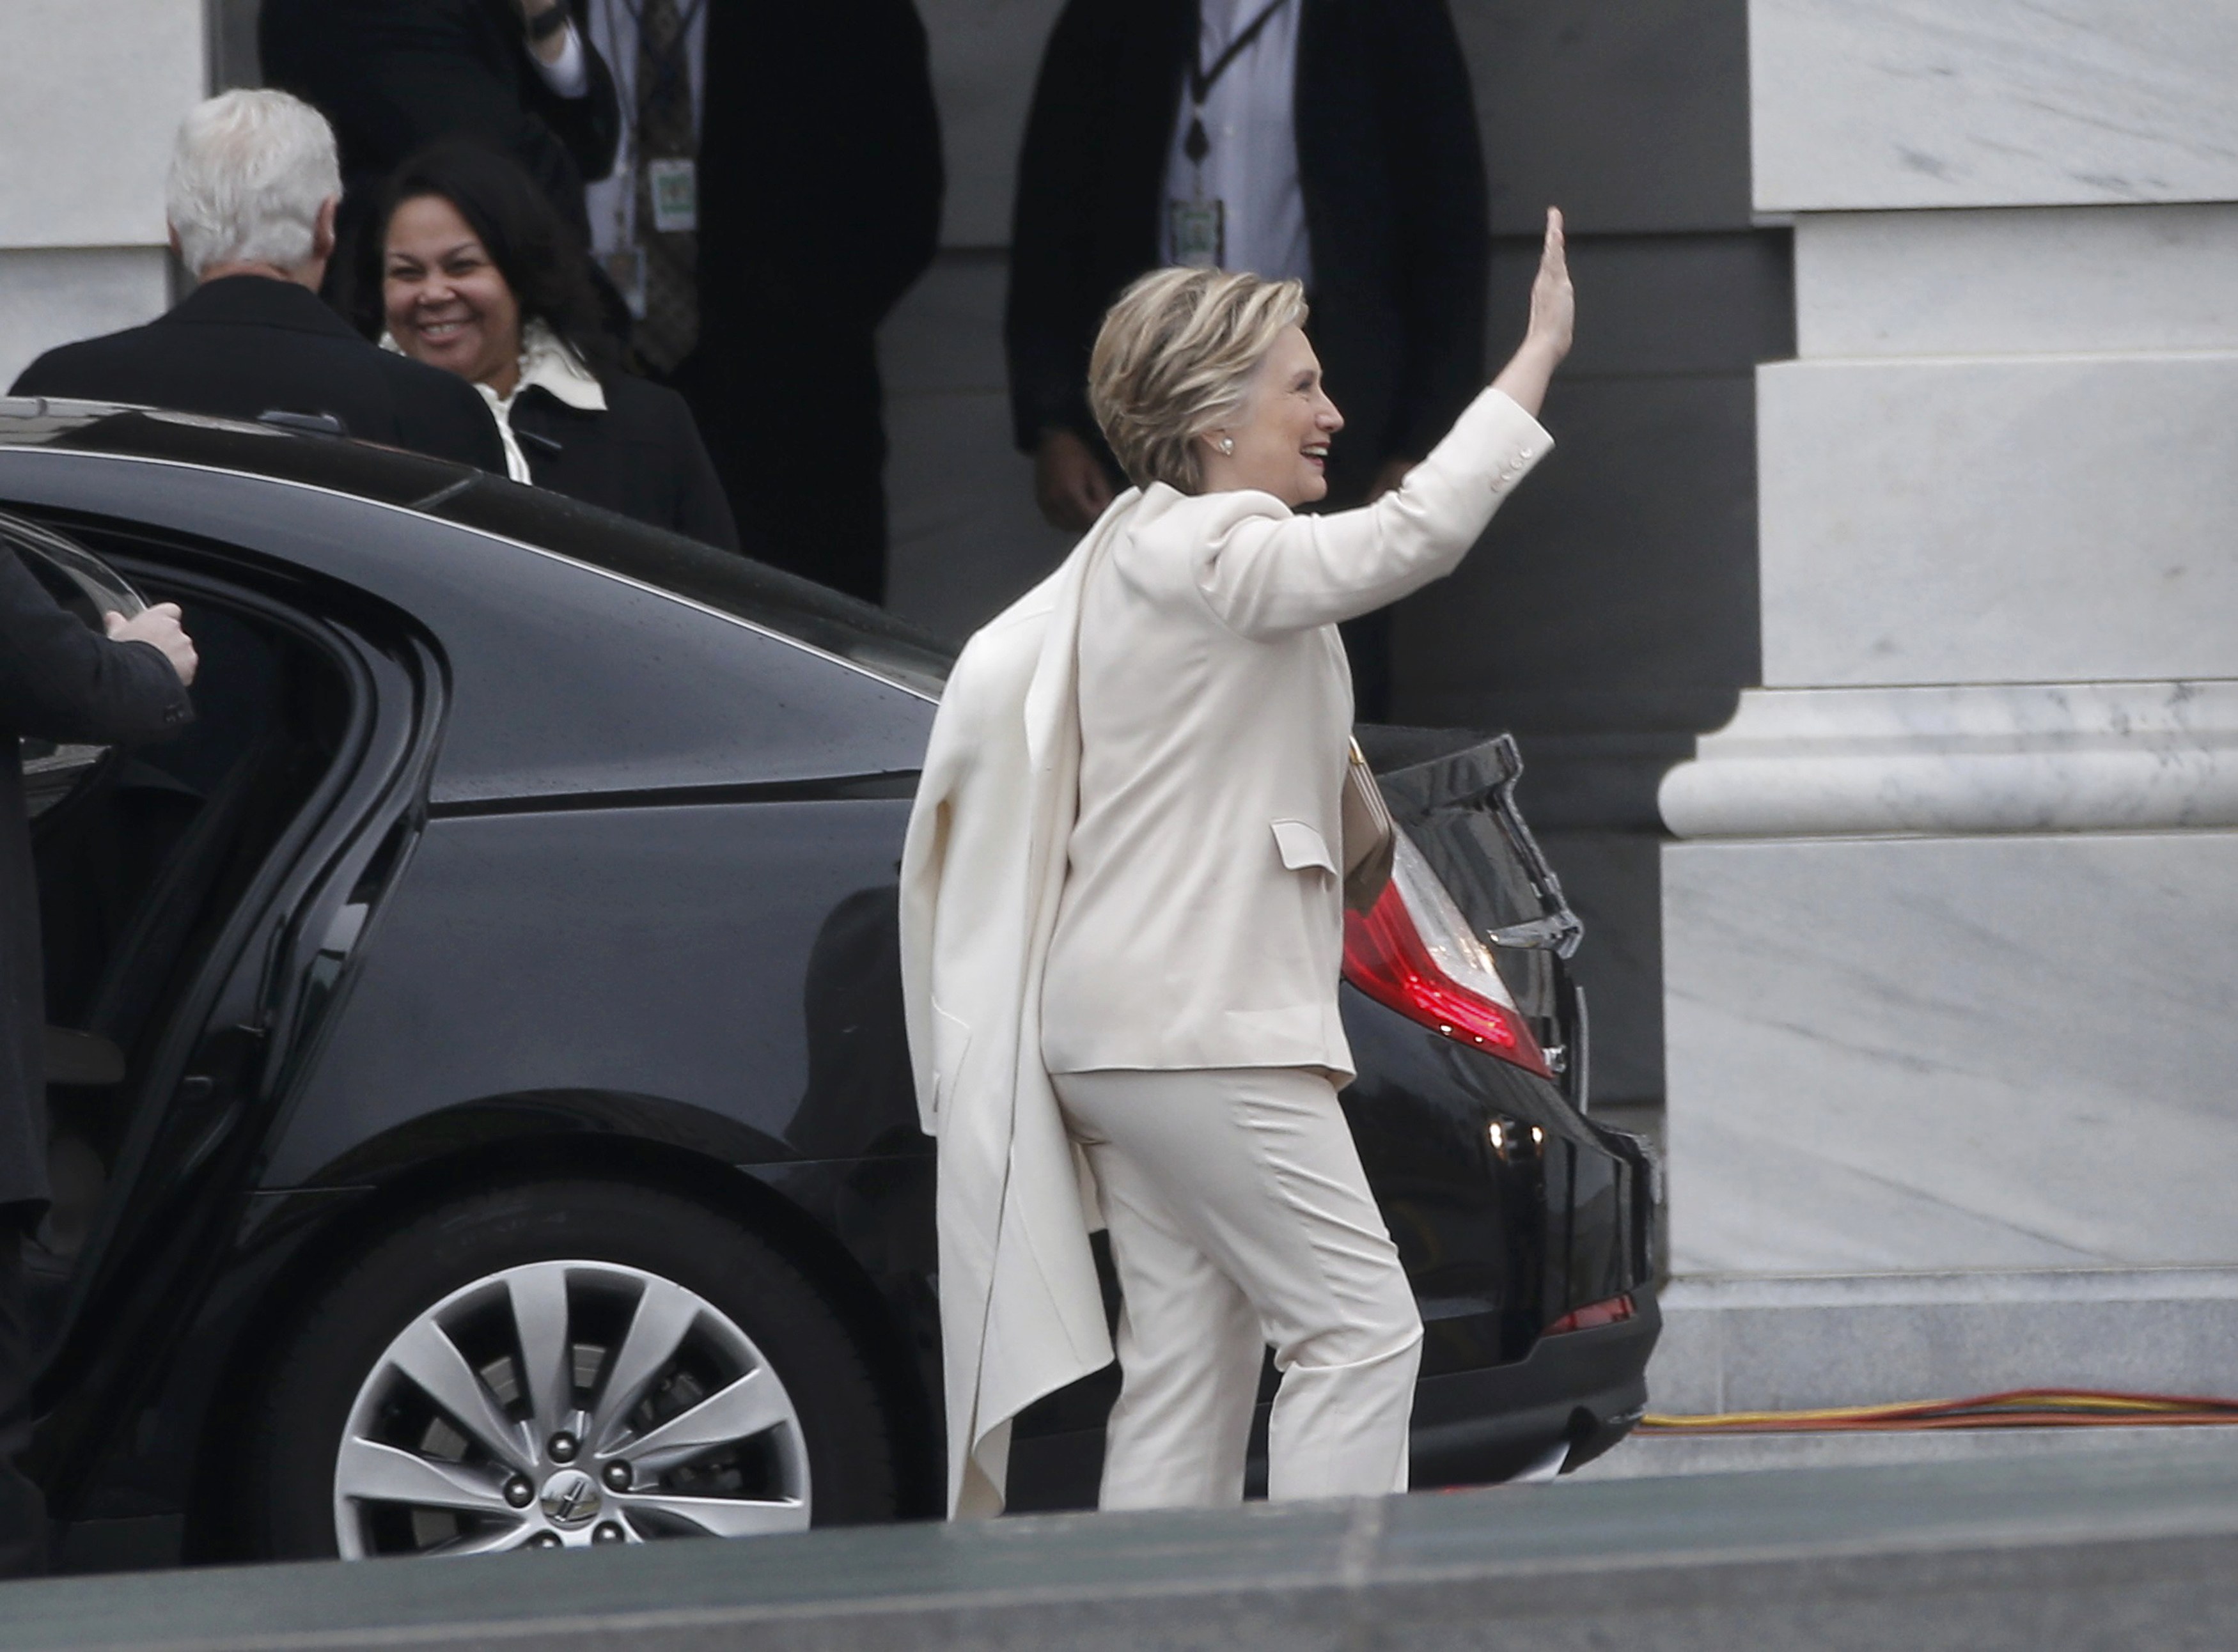 لحظة وصول هيلارى كلينتون إلى مقر تنصيب دونالد ترامب فى واشنطن